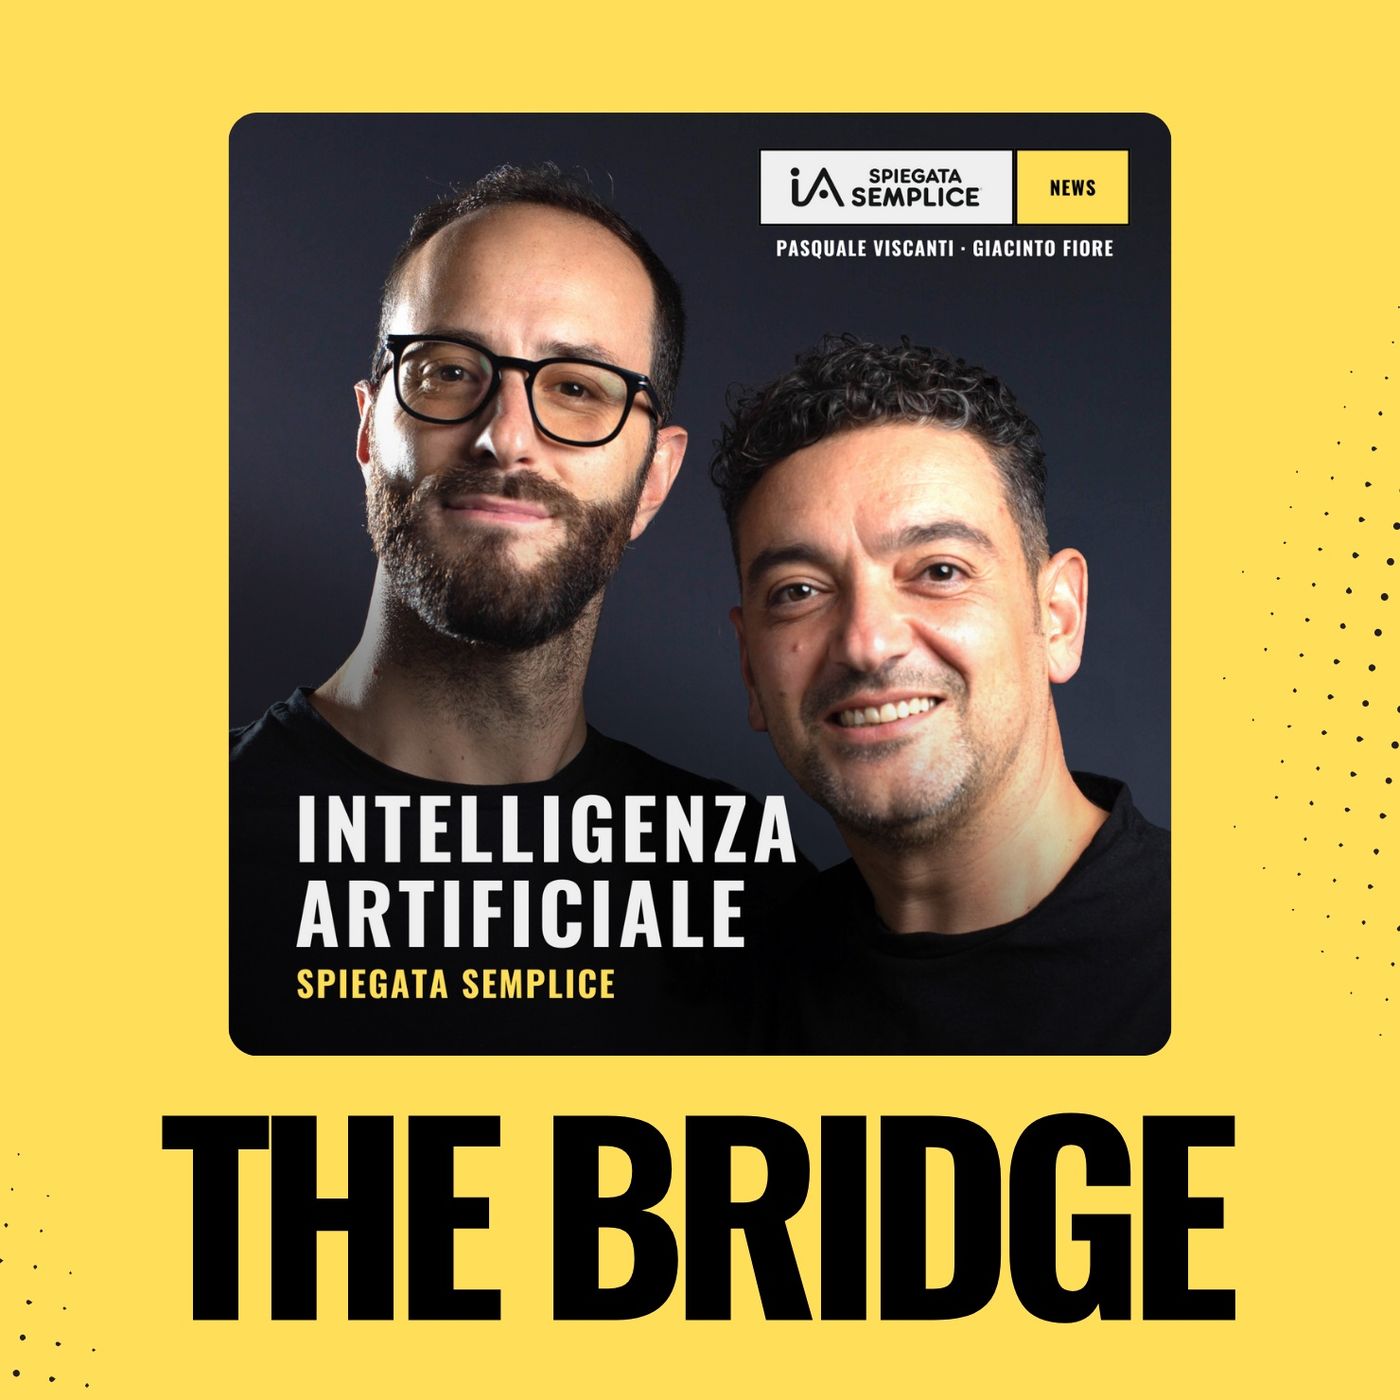 THE BRIDGE | Scuola ed Intelligenza Artificiale, a che punto siamo? Con Mario Catalano, premiato “Miglior Insegnante dell’anno”